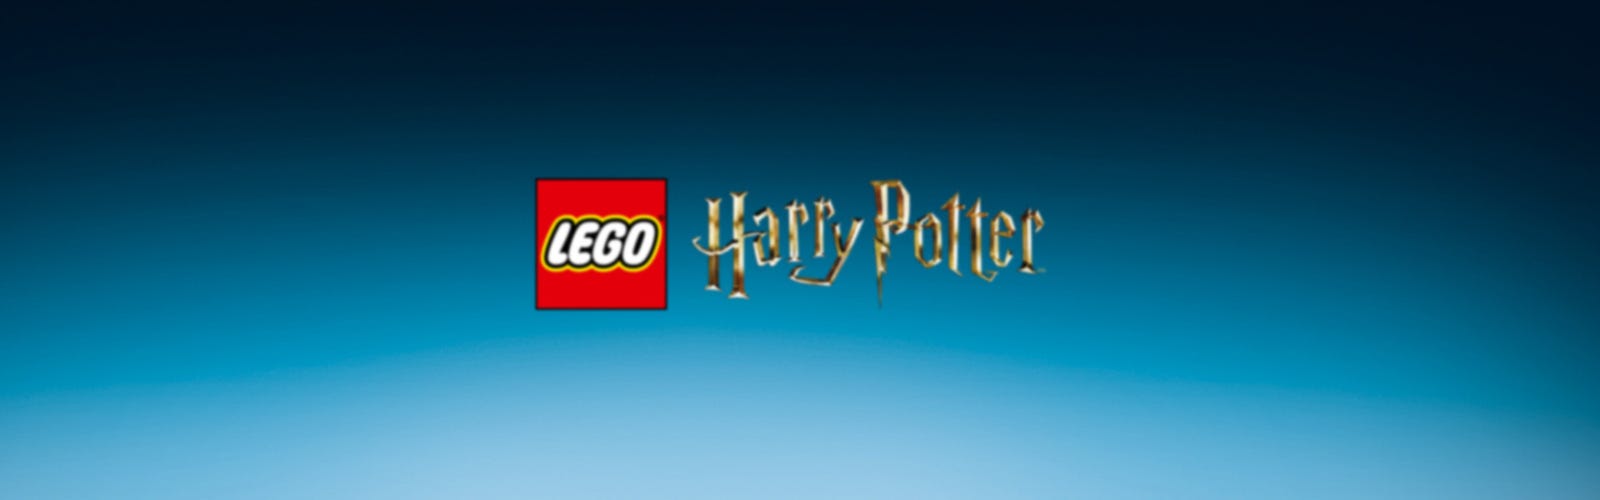 LEGO 76422 Harry Potter Ulica Pokątna: Magiczne dowcipy Weasleyów - niskie  ceny i opinie w Media Expert